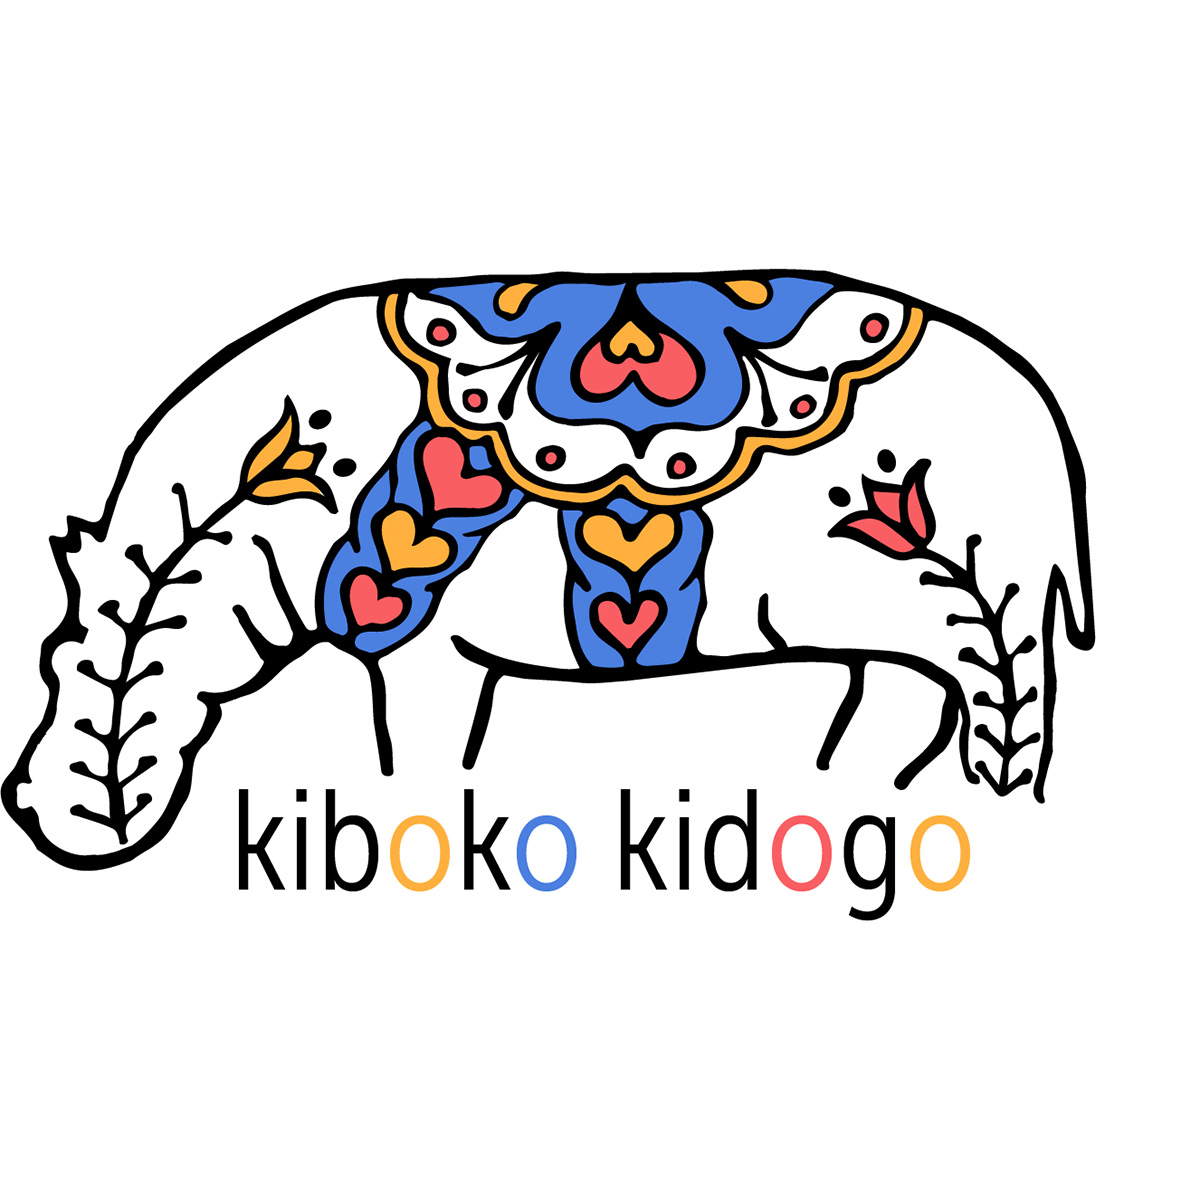 Kiboko Kidogo